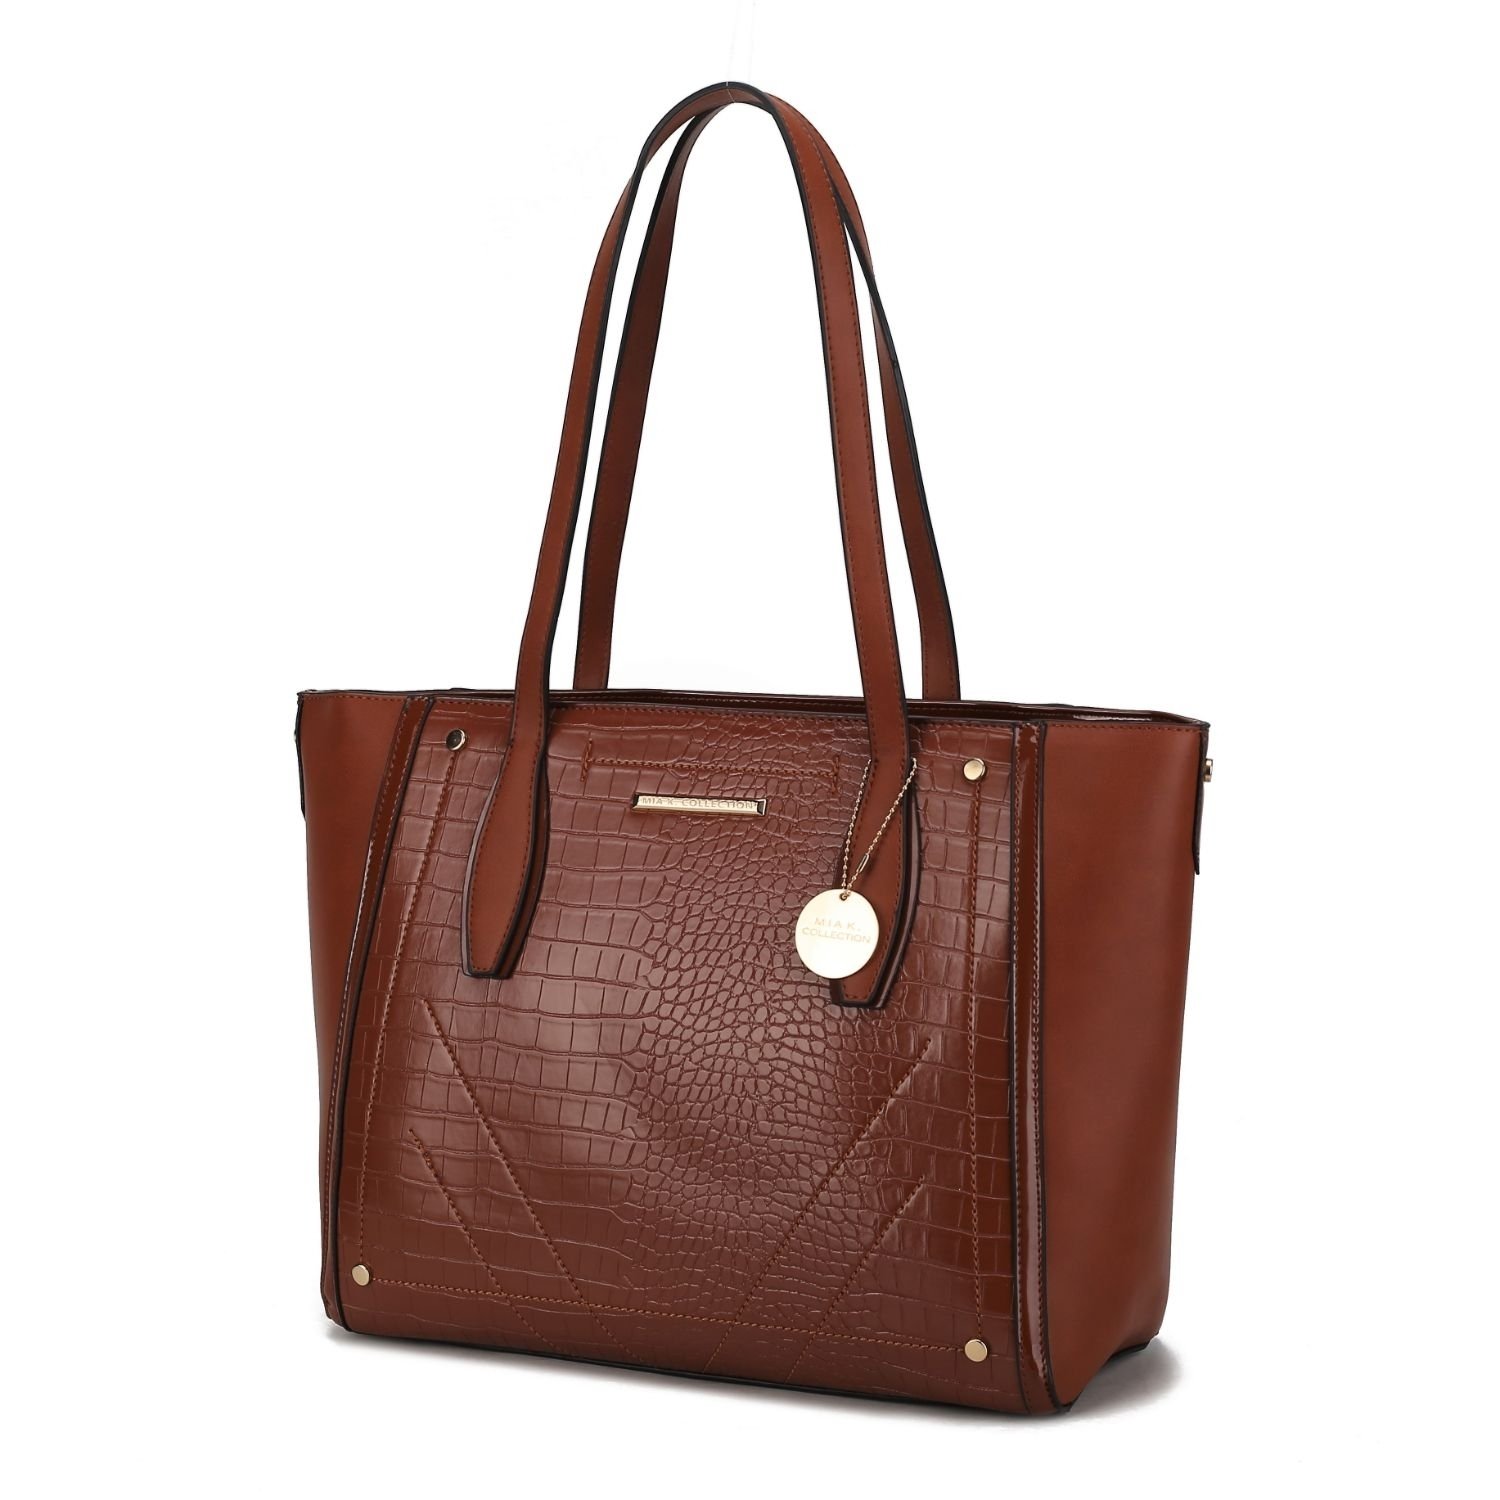 MKF Collection Robin Tote Handbag By Mia K. - Cognac